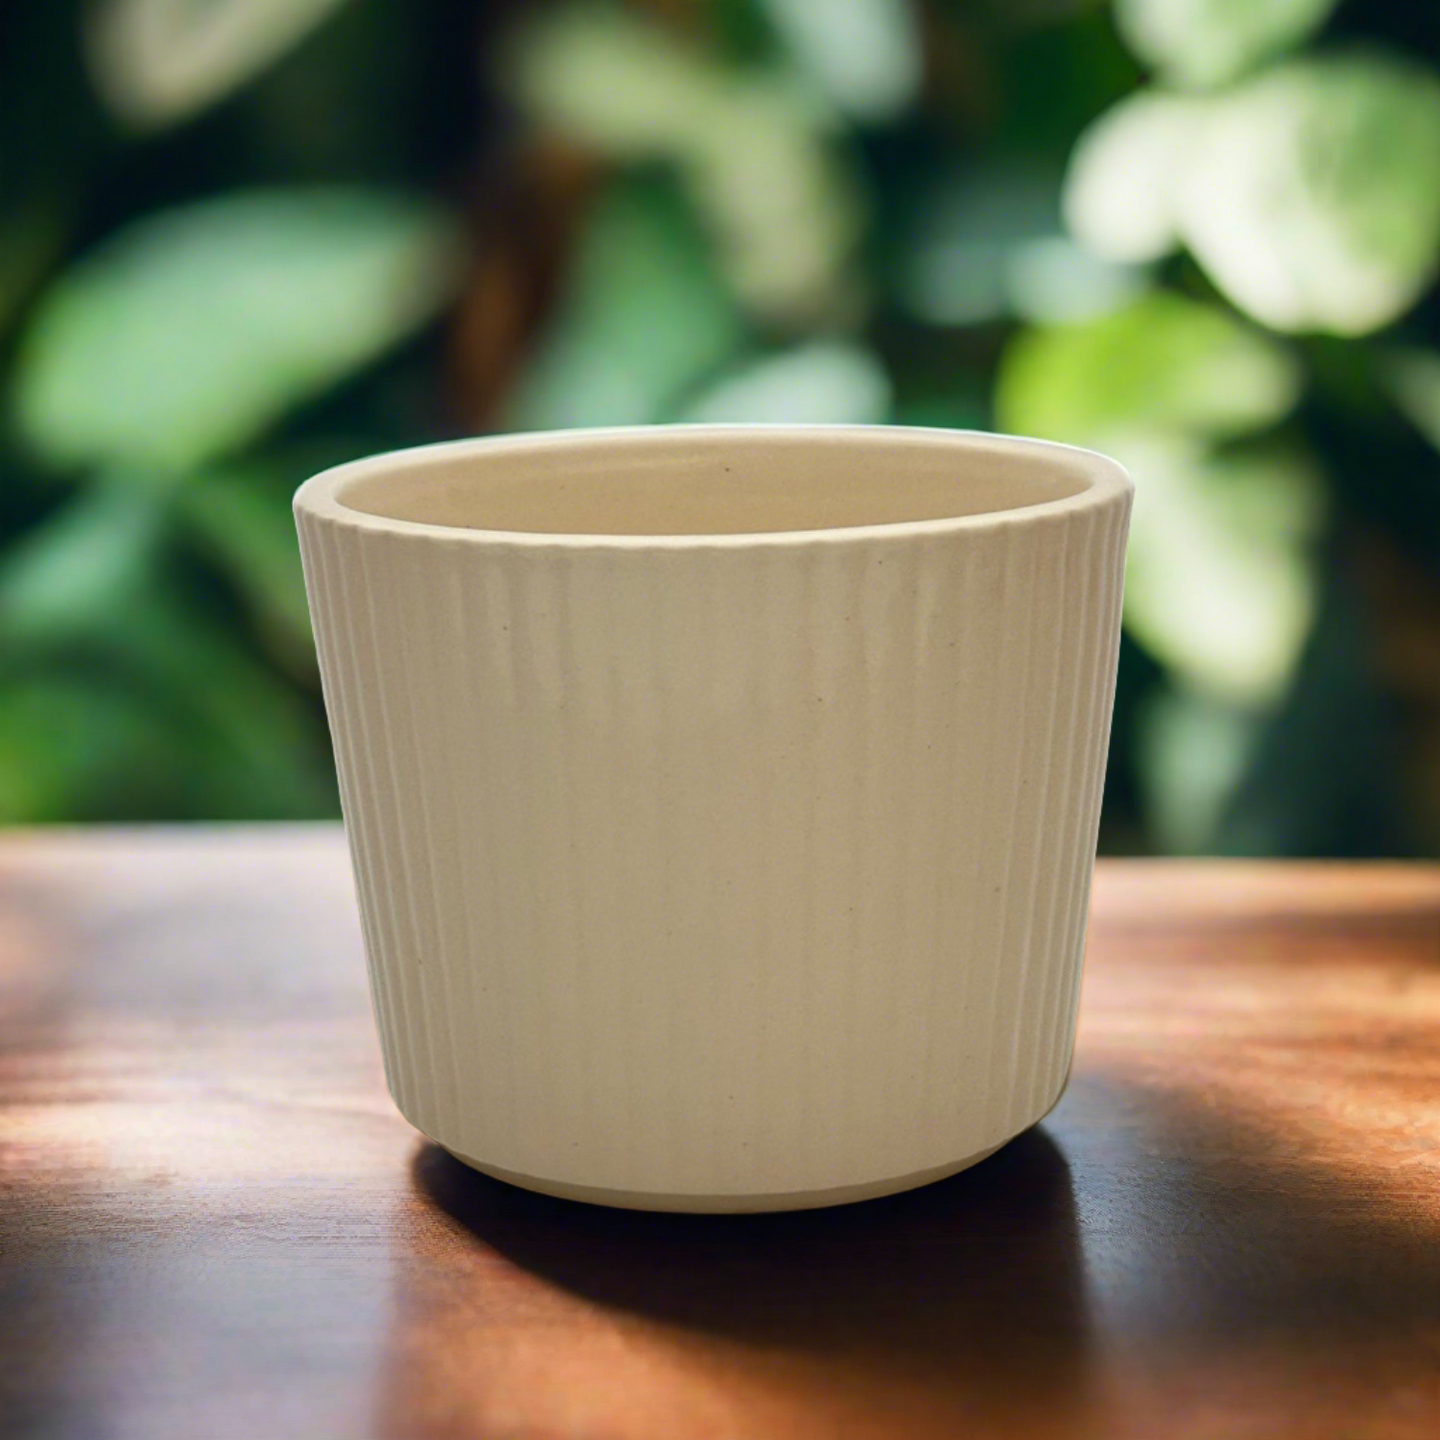 Fluted Ceramic Planter (Cream)